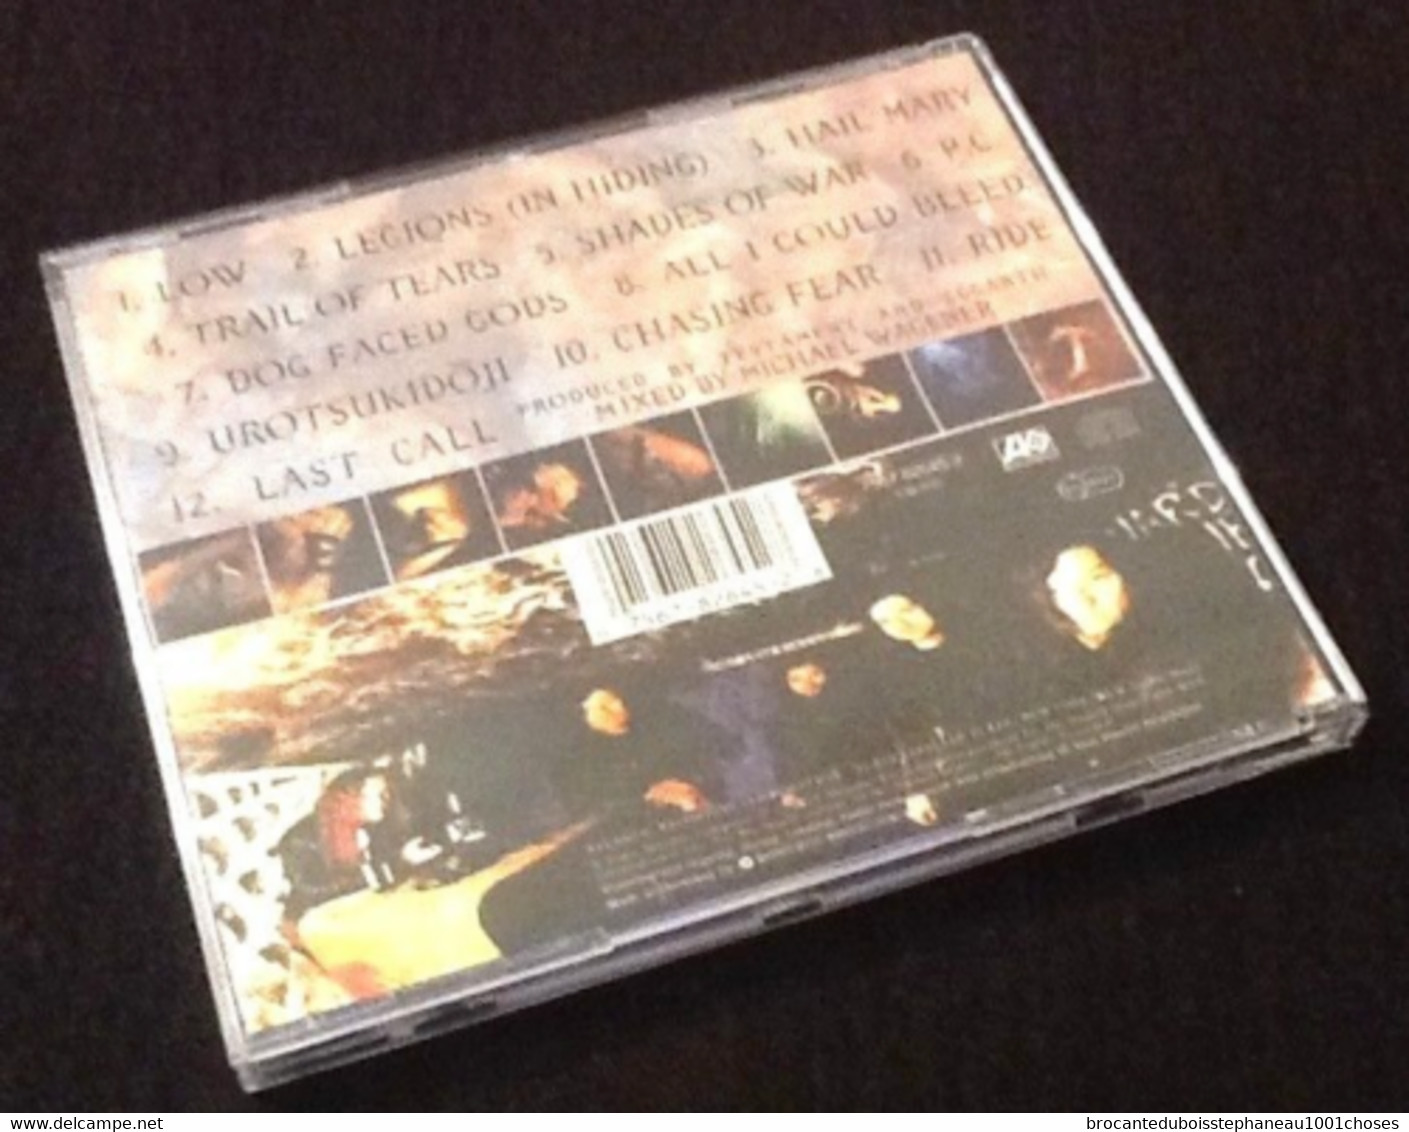 Album CD  Testament  Low (1994) 7567 82645 2 - Hard Rock & Metal